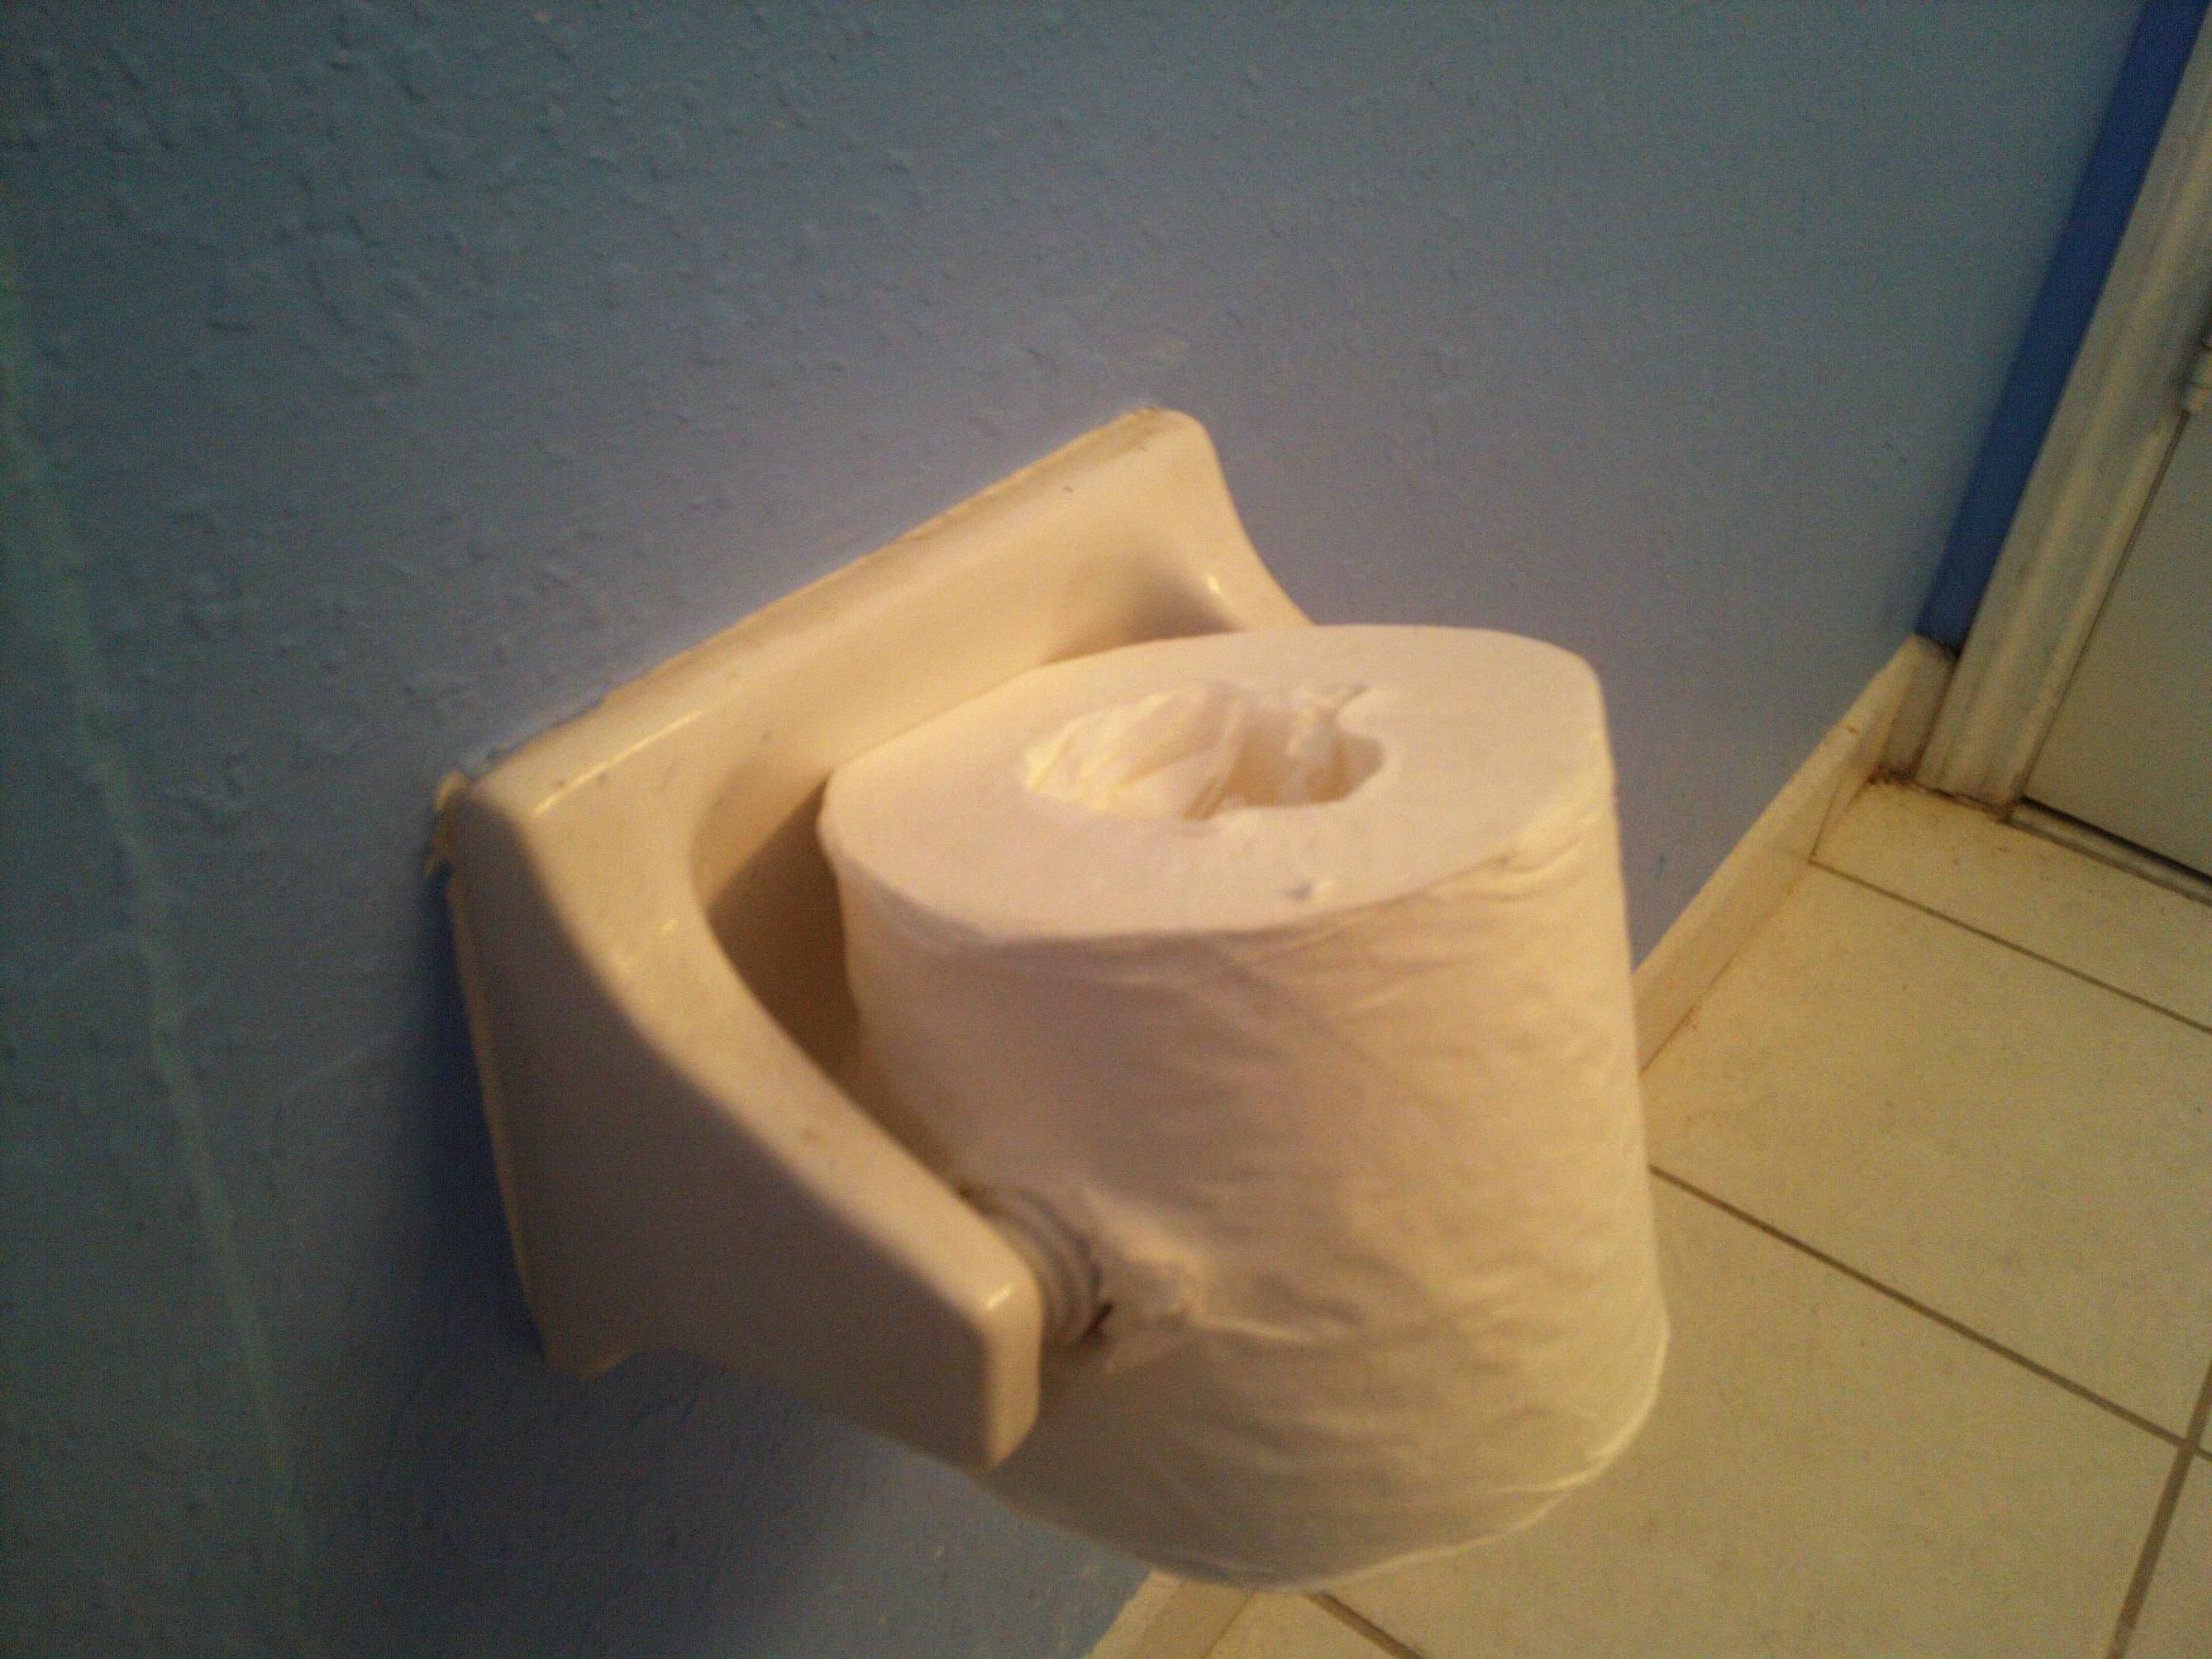 Toilet paper fan pic